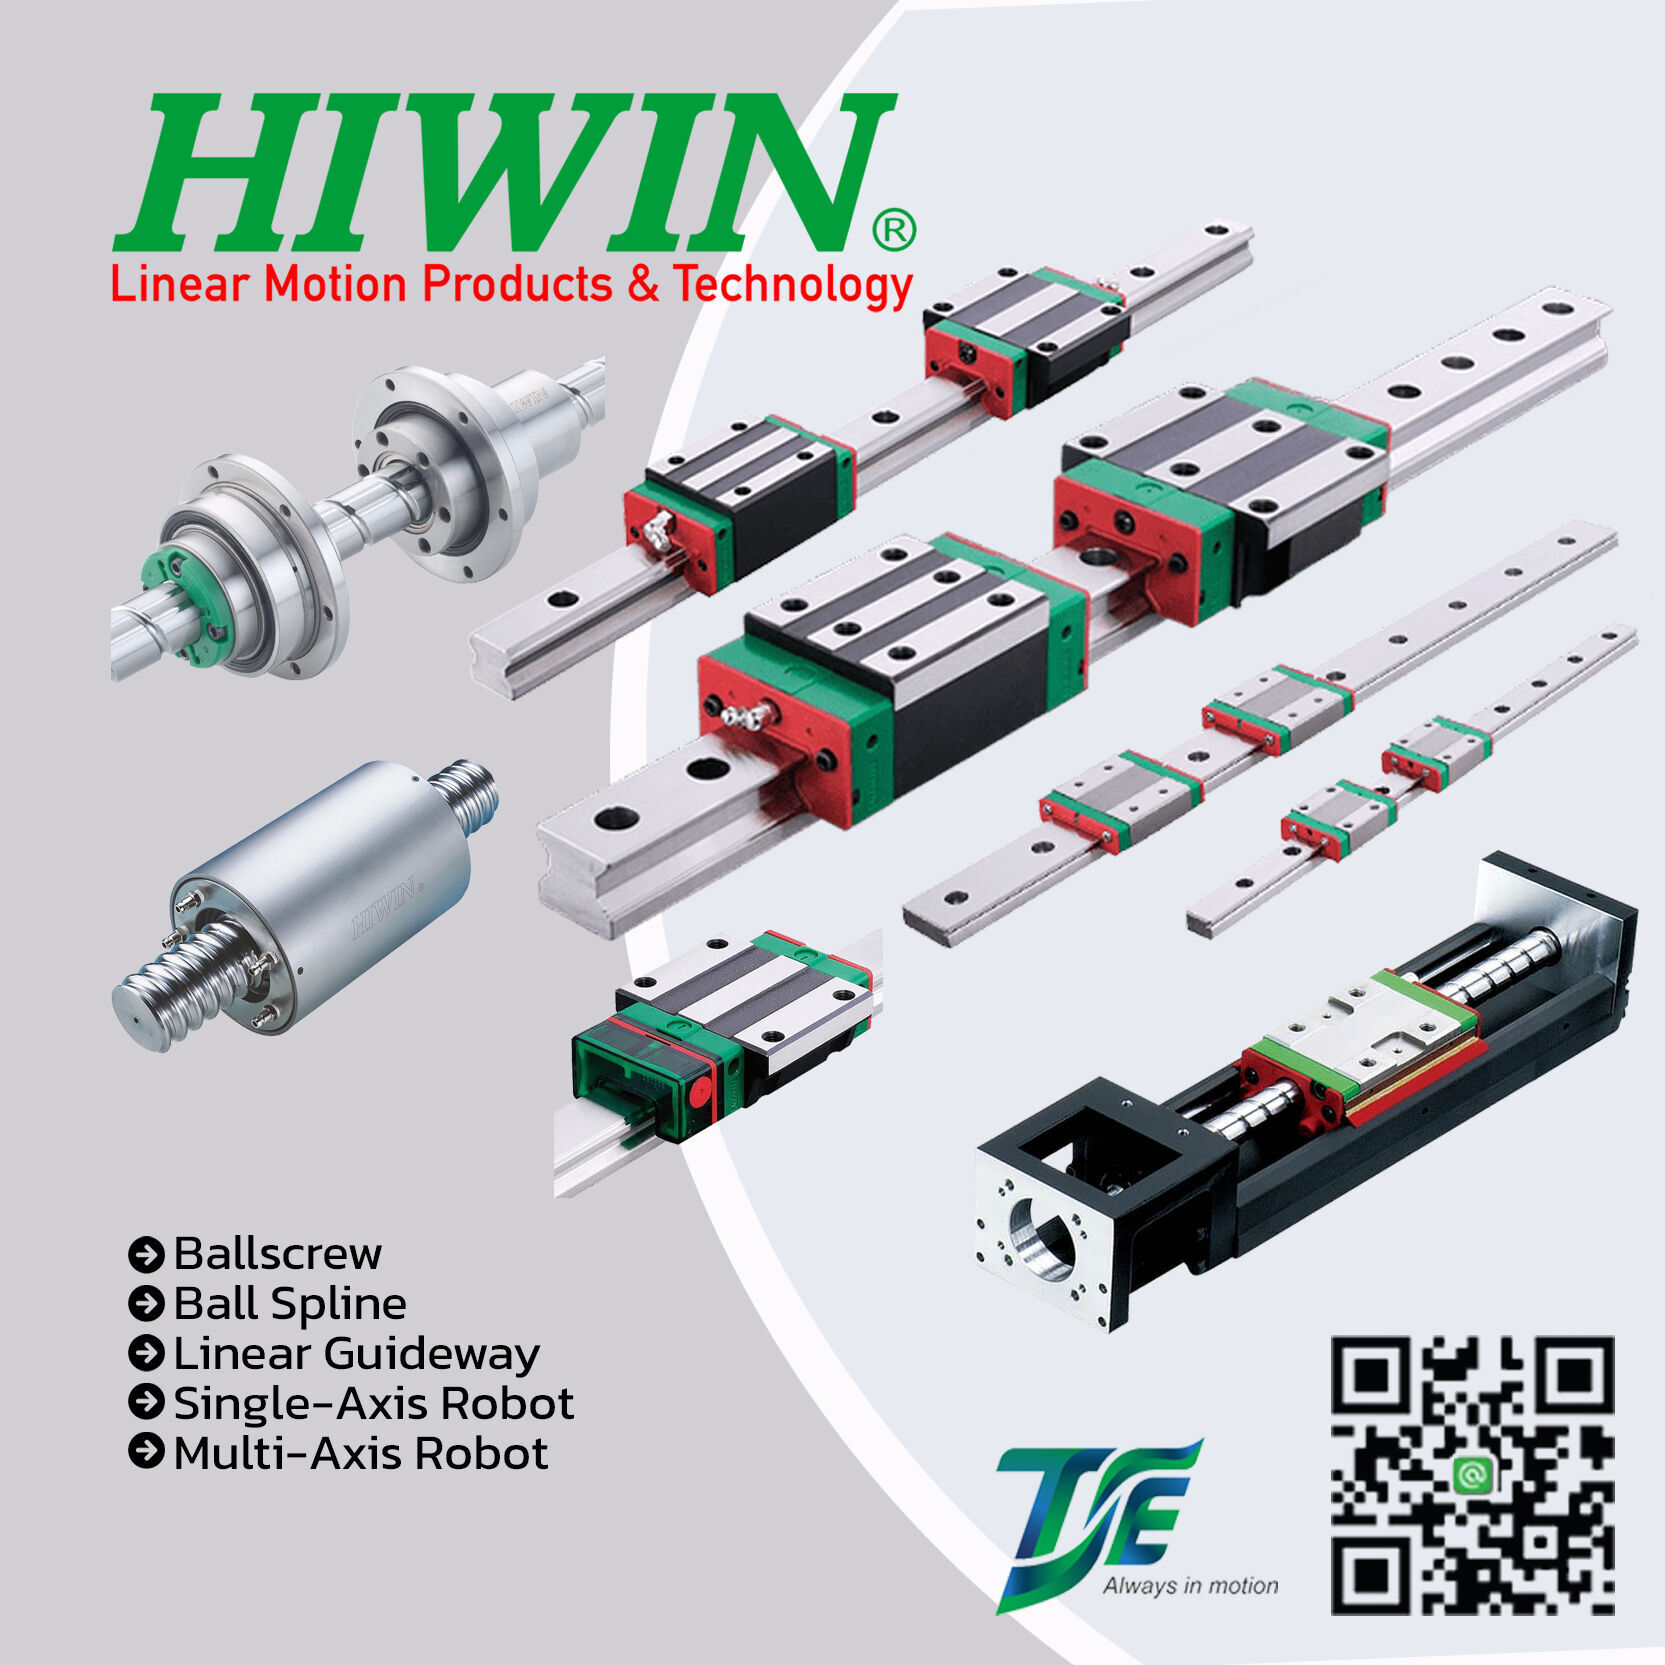 HIWIN
Ballscrew
Ball Spline
Linear Guideway
Single-Axis Robot
Multi-Axis Robot